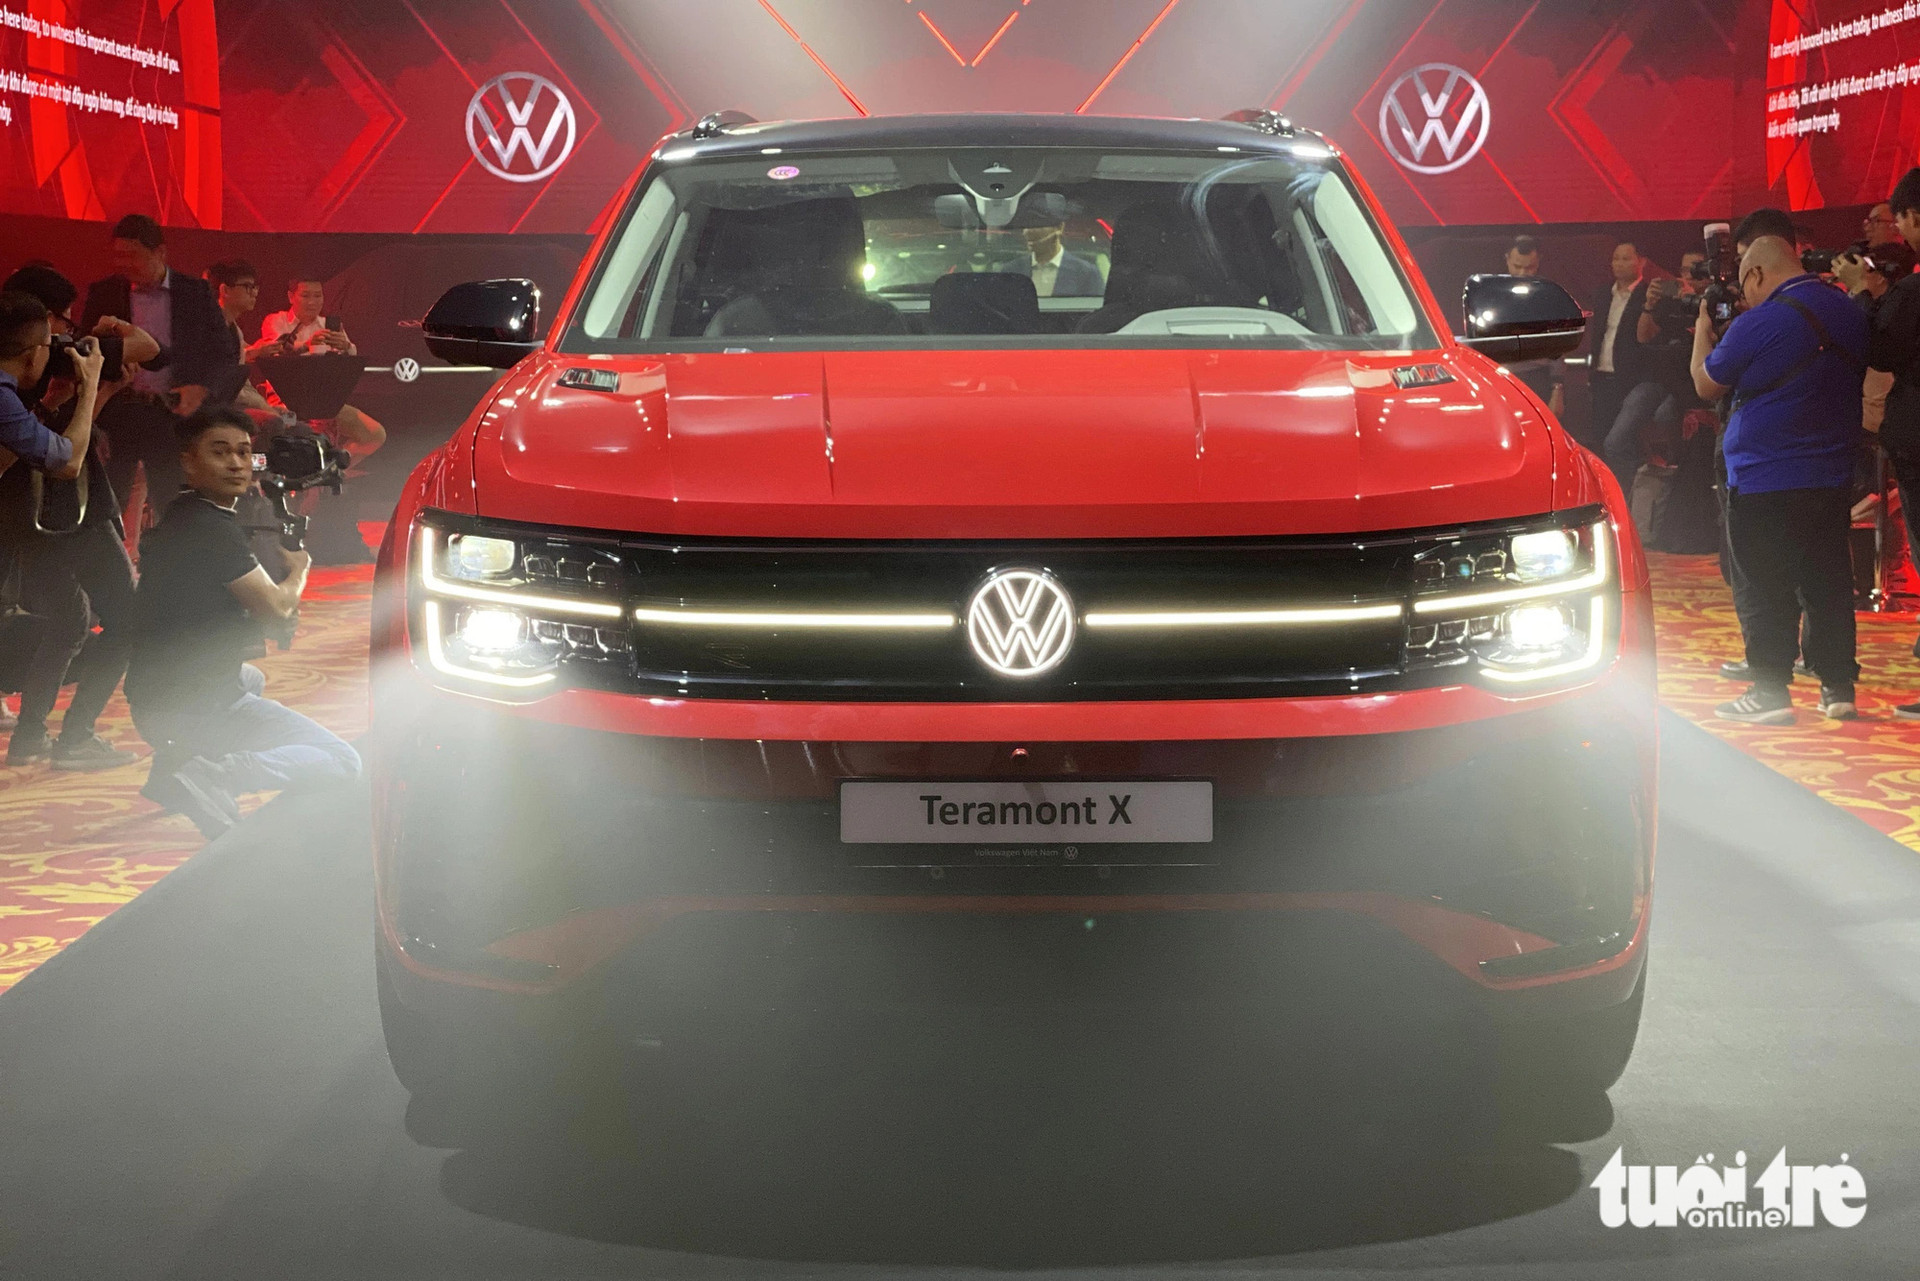 Volkswagen Teramont X dùng chung hệ thống gầm bệ và động cơ, hộp số như Teramont. Sức mạnh đến từ động cơ 2.0L tăng áp 220 mã lực, mô-men xoắn 350Nm, kết hợp số ly hợp kép 7 cấp và hệ dẫn động 4 bánh